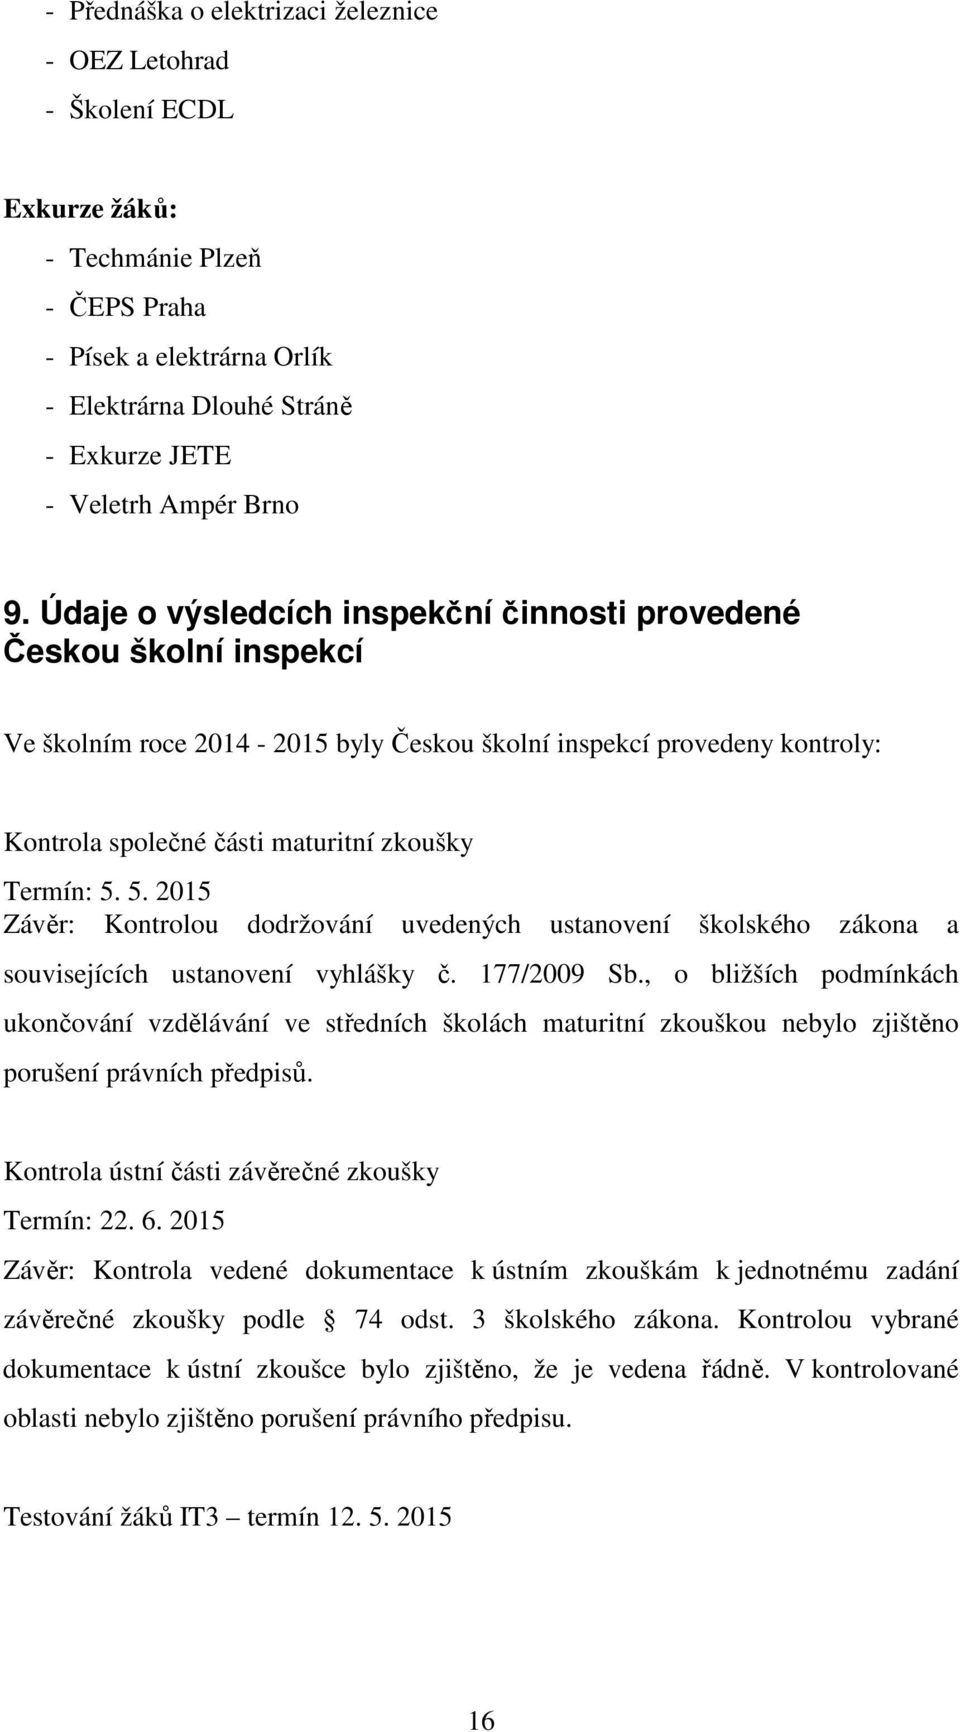 Údaje o výsledcích inspekční činnosti provedené Českou školní inspekcí Ve školním roce 2014-2015 byly Českou školní inspekcí provedeny kontroly: Kontrola společné části maturitní zkoušky Termín: 5.